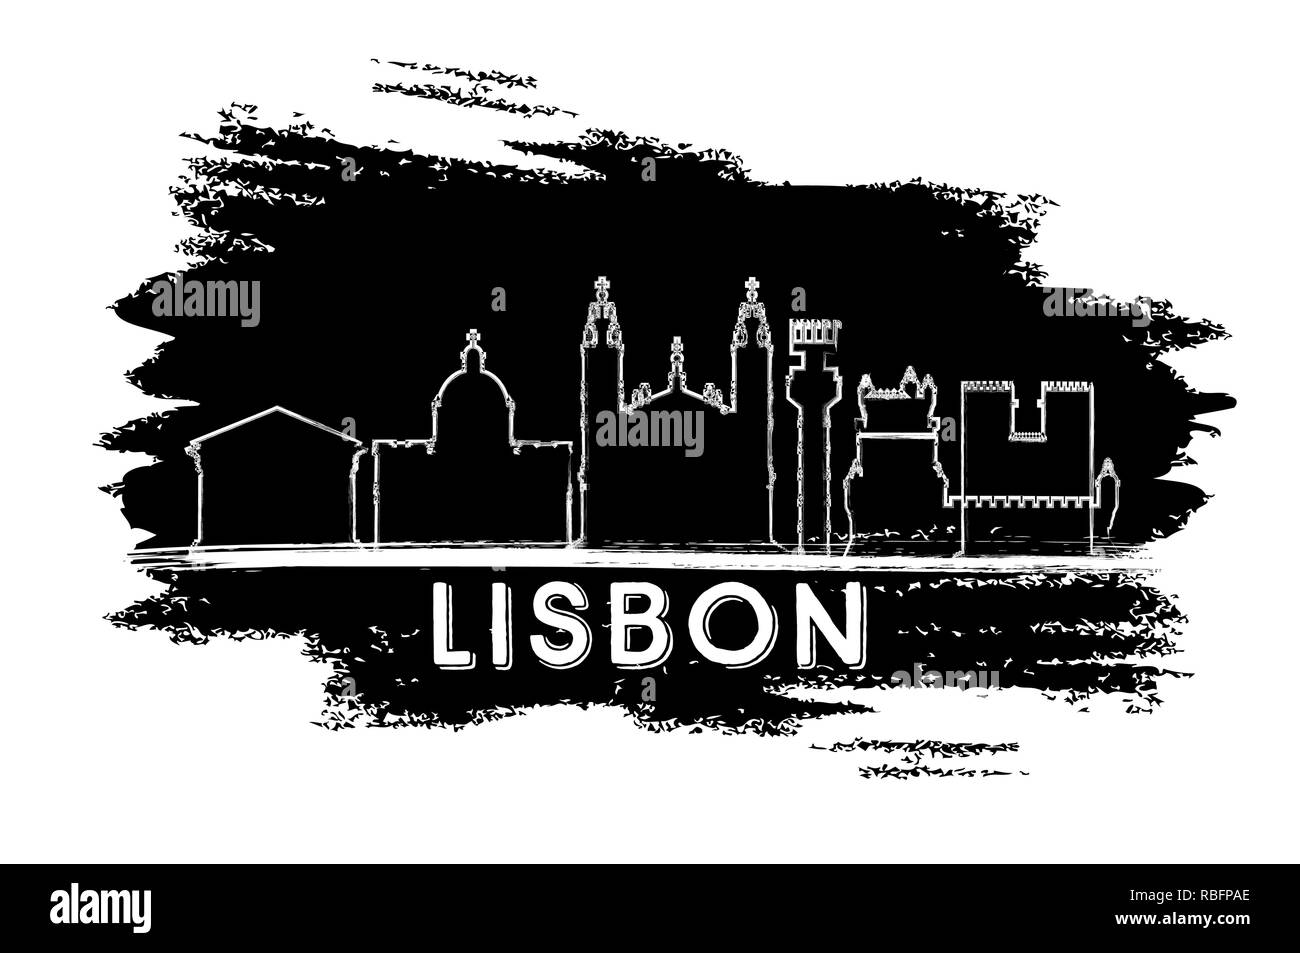 Lissabon Portugal Skyline der Stadt Silhouette. Hand gezeichnete Skizze. Vector Illustration. Business Travel und Tourismus Konzept mit historischer Architektur. Stock Vektor